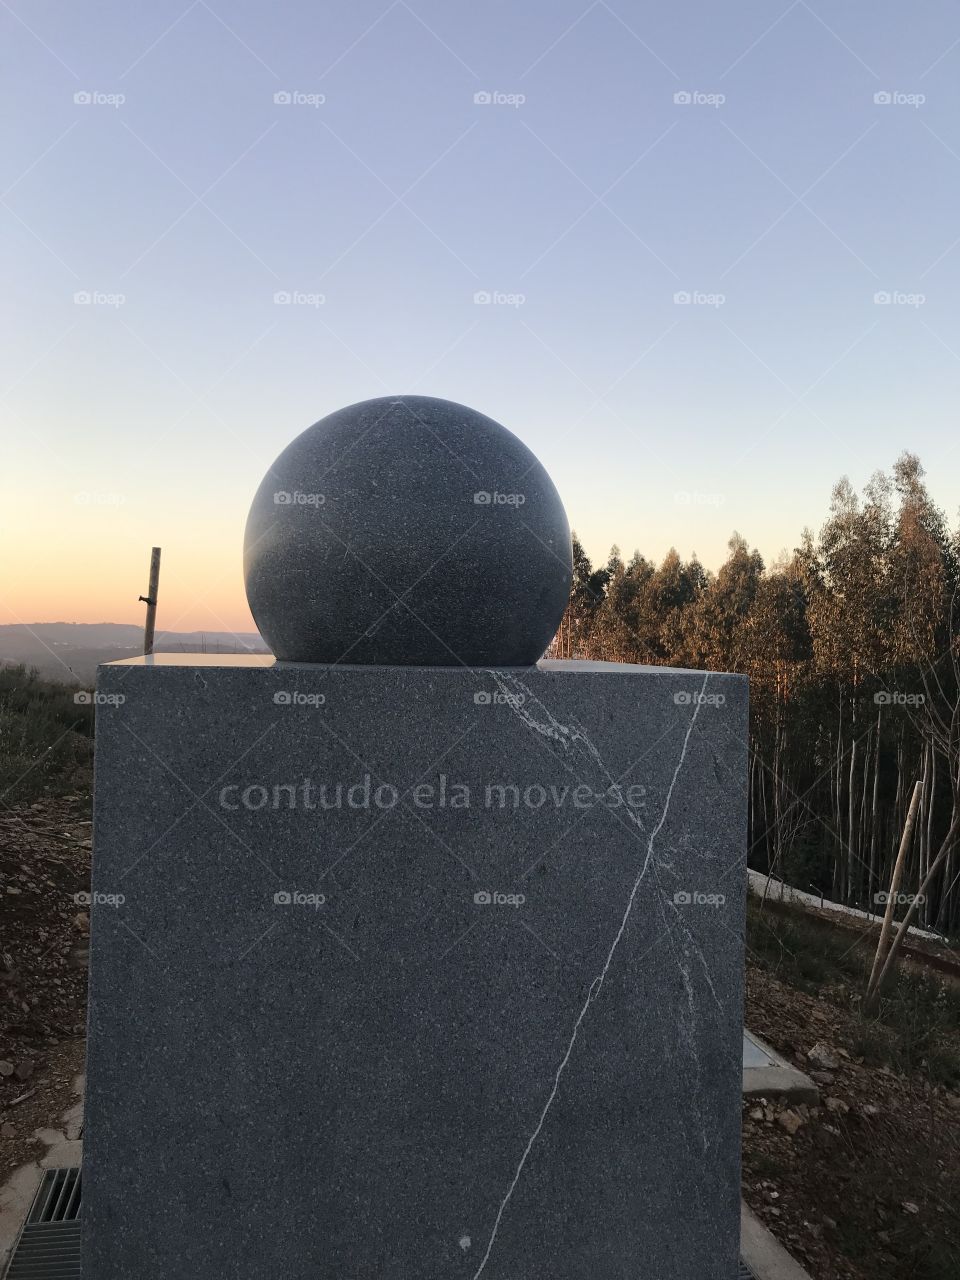 “However it moves”, templo ecumênico universalista, parque biológico da Lousã, Portugal 🇵🇹